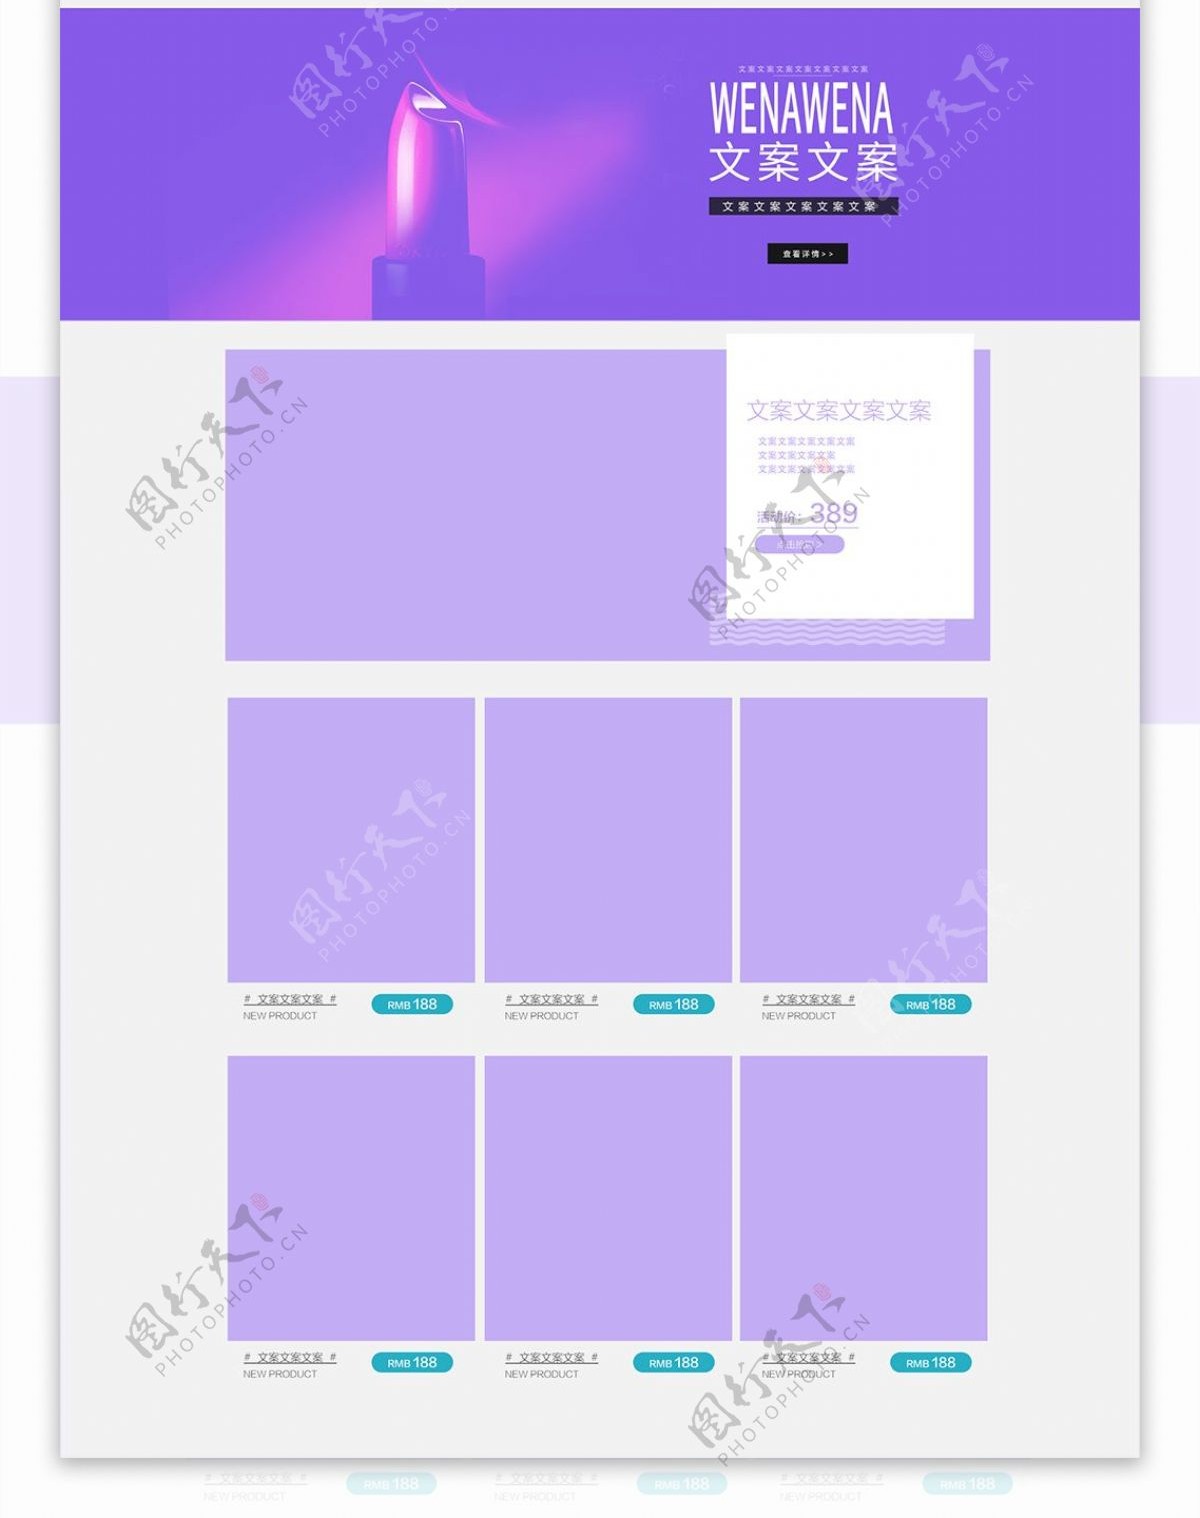 促销狂欢紫色美妆首页模板PSD源文件